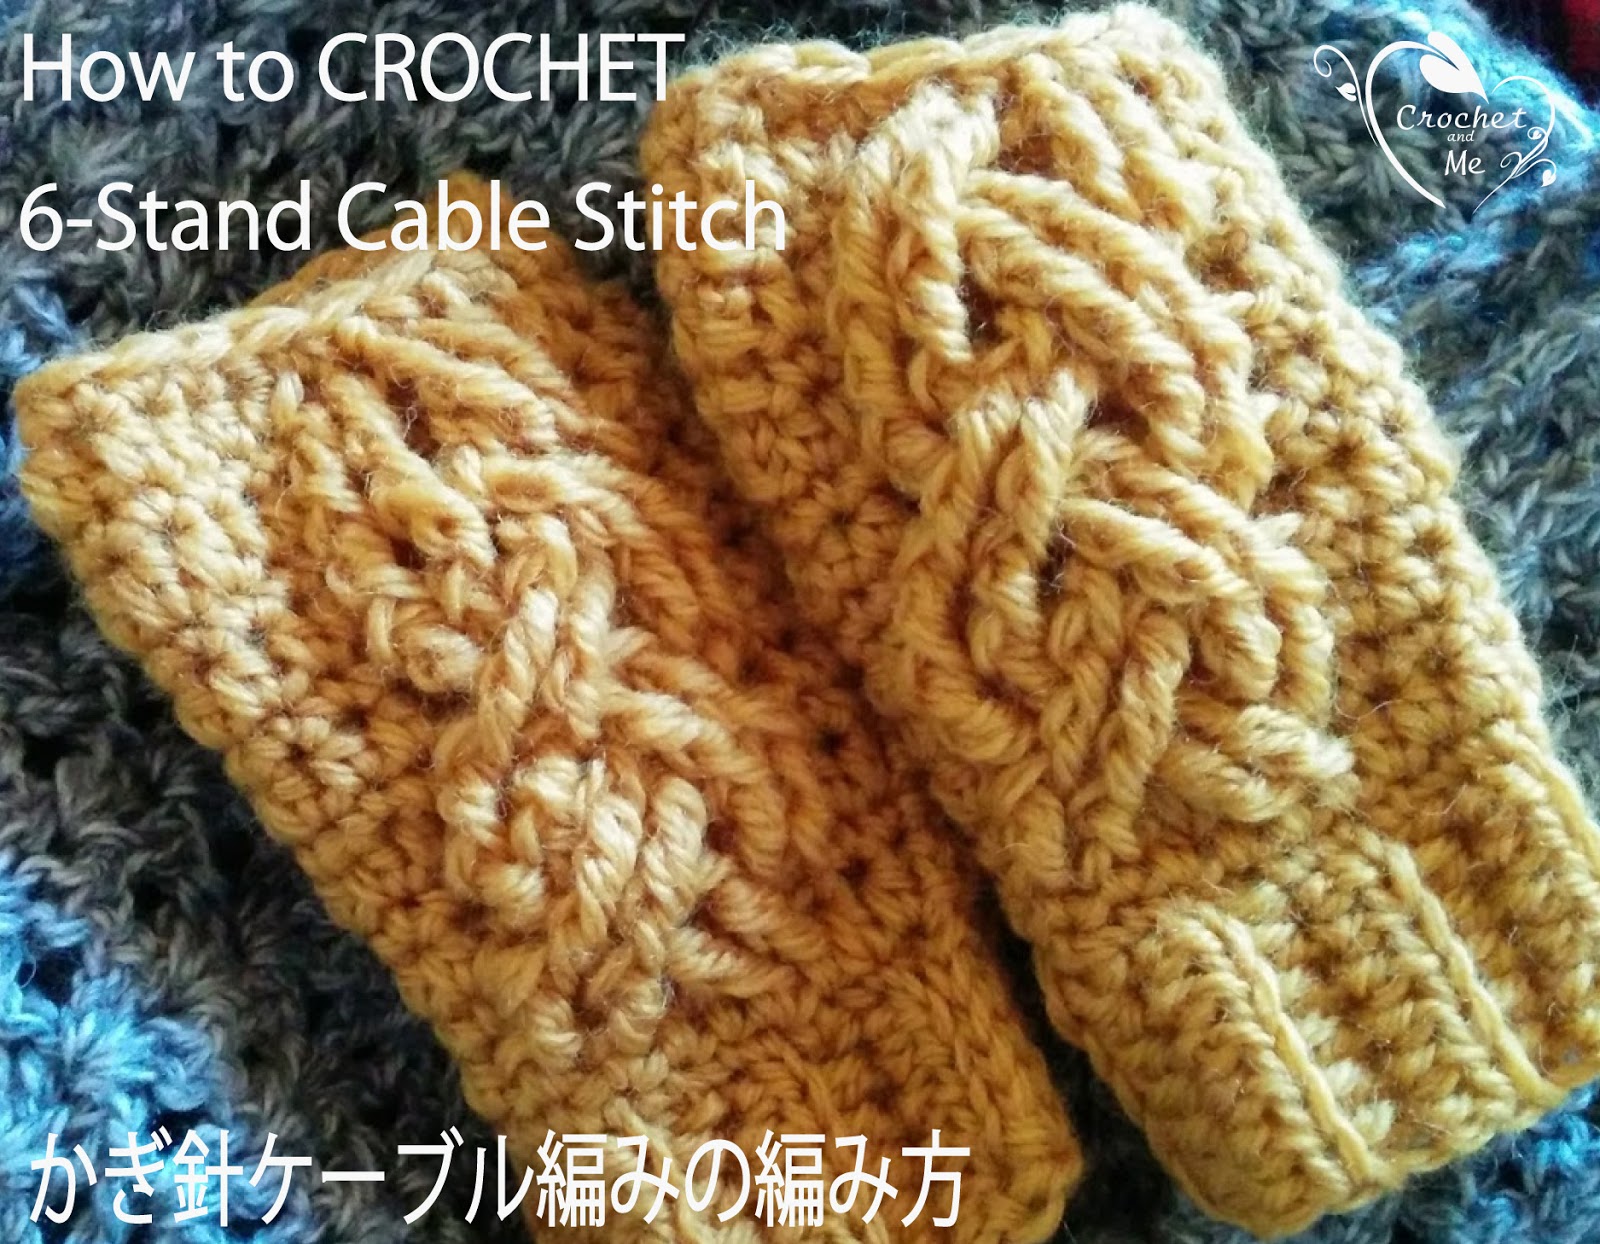 かぎ針で編む6目のケーブル編みの編み方 Crochet 6 Stand Cable Stitch Crochet And Me かぎ針編みの編み図と 編み方